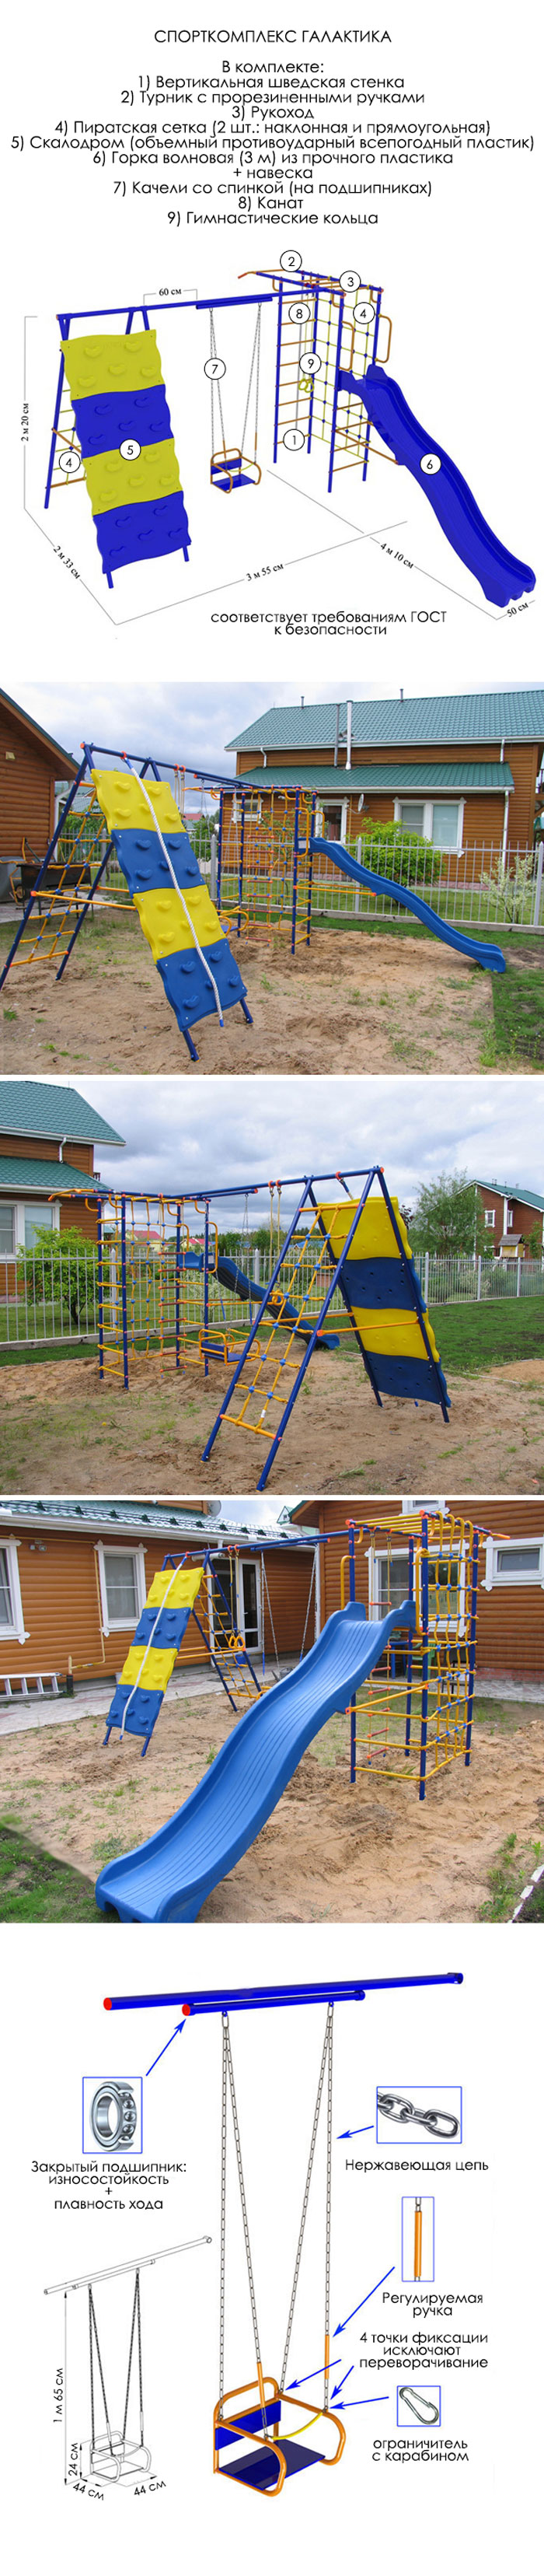 Дачная спортивная игровая площадка для детей Галактика с трехметровой пластиковой горкой и скалодромом Веселый Непоседа